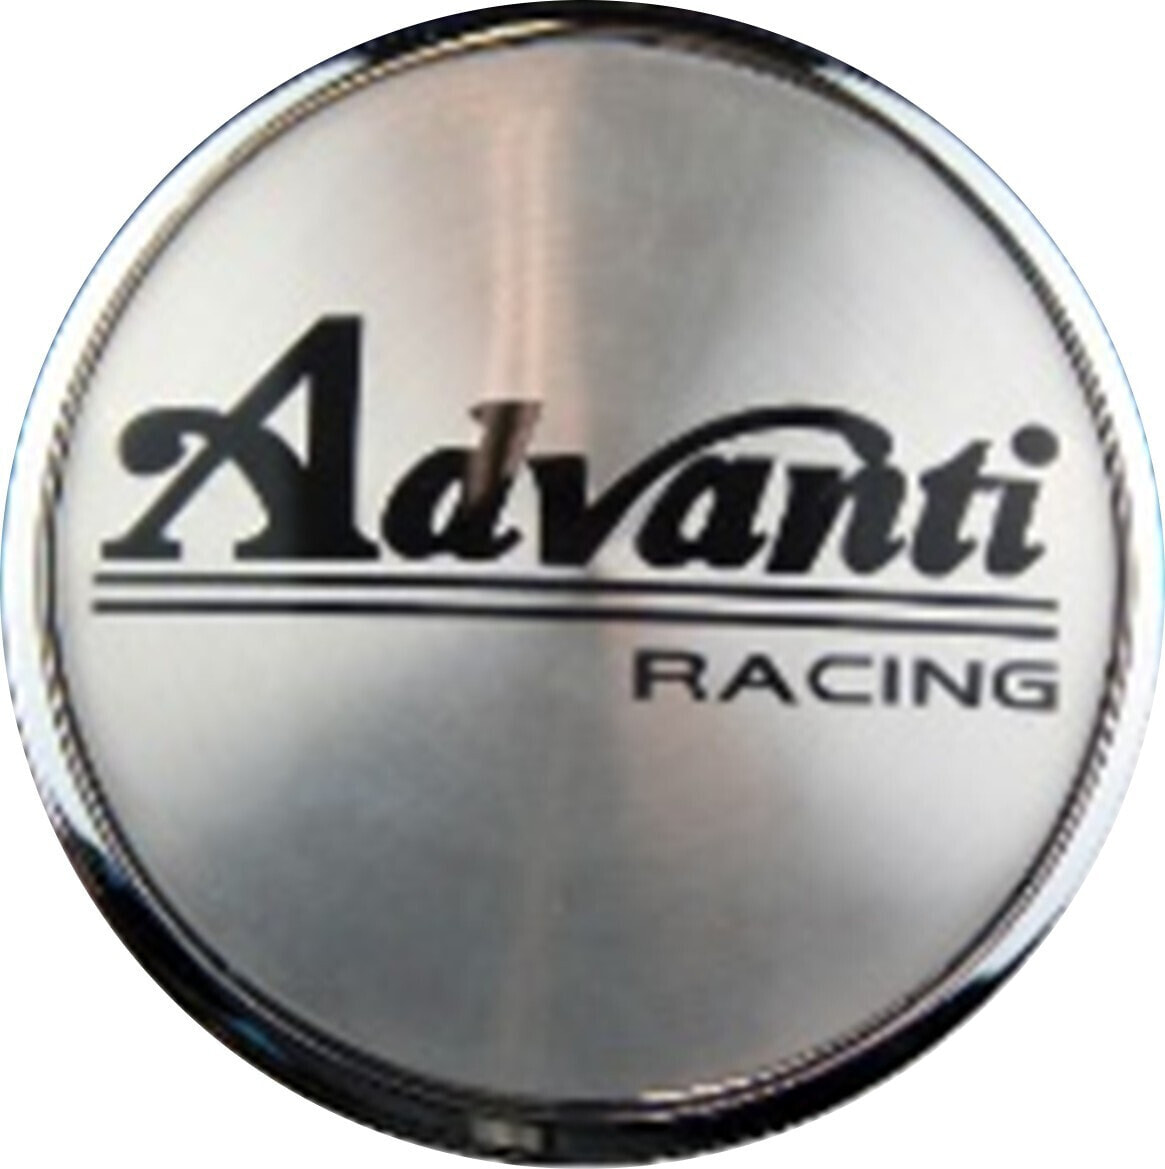 Nabenkappe Advanti Racing Nabenkappe ADV.04